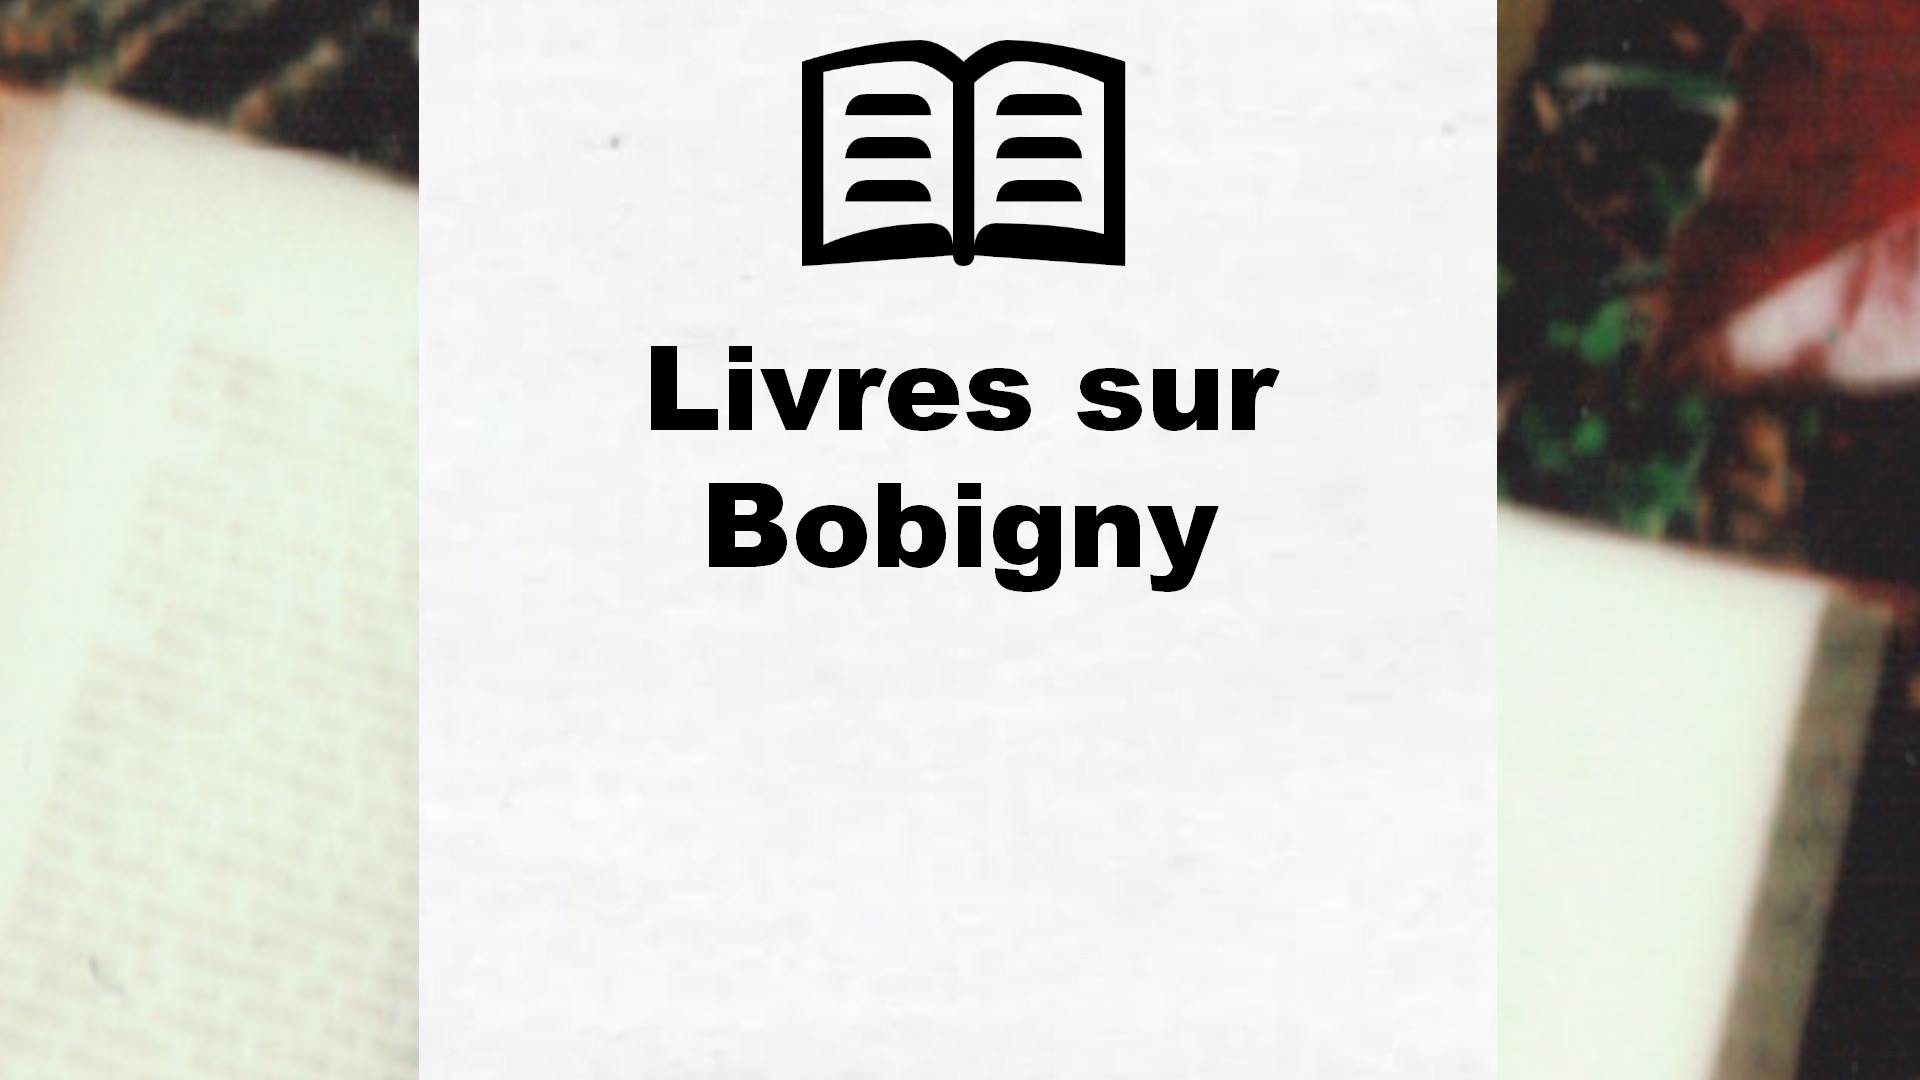 Livres sur Bobigny